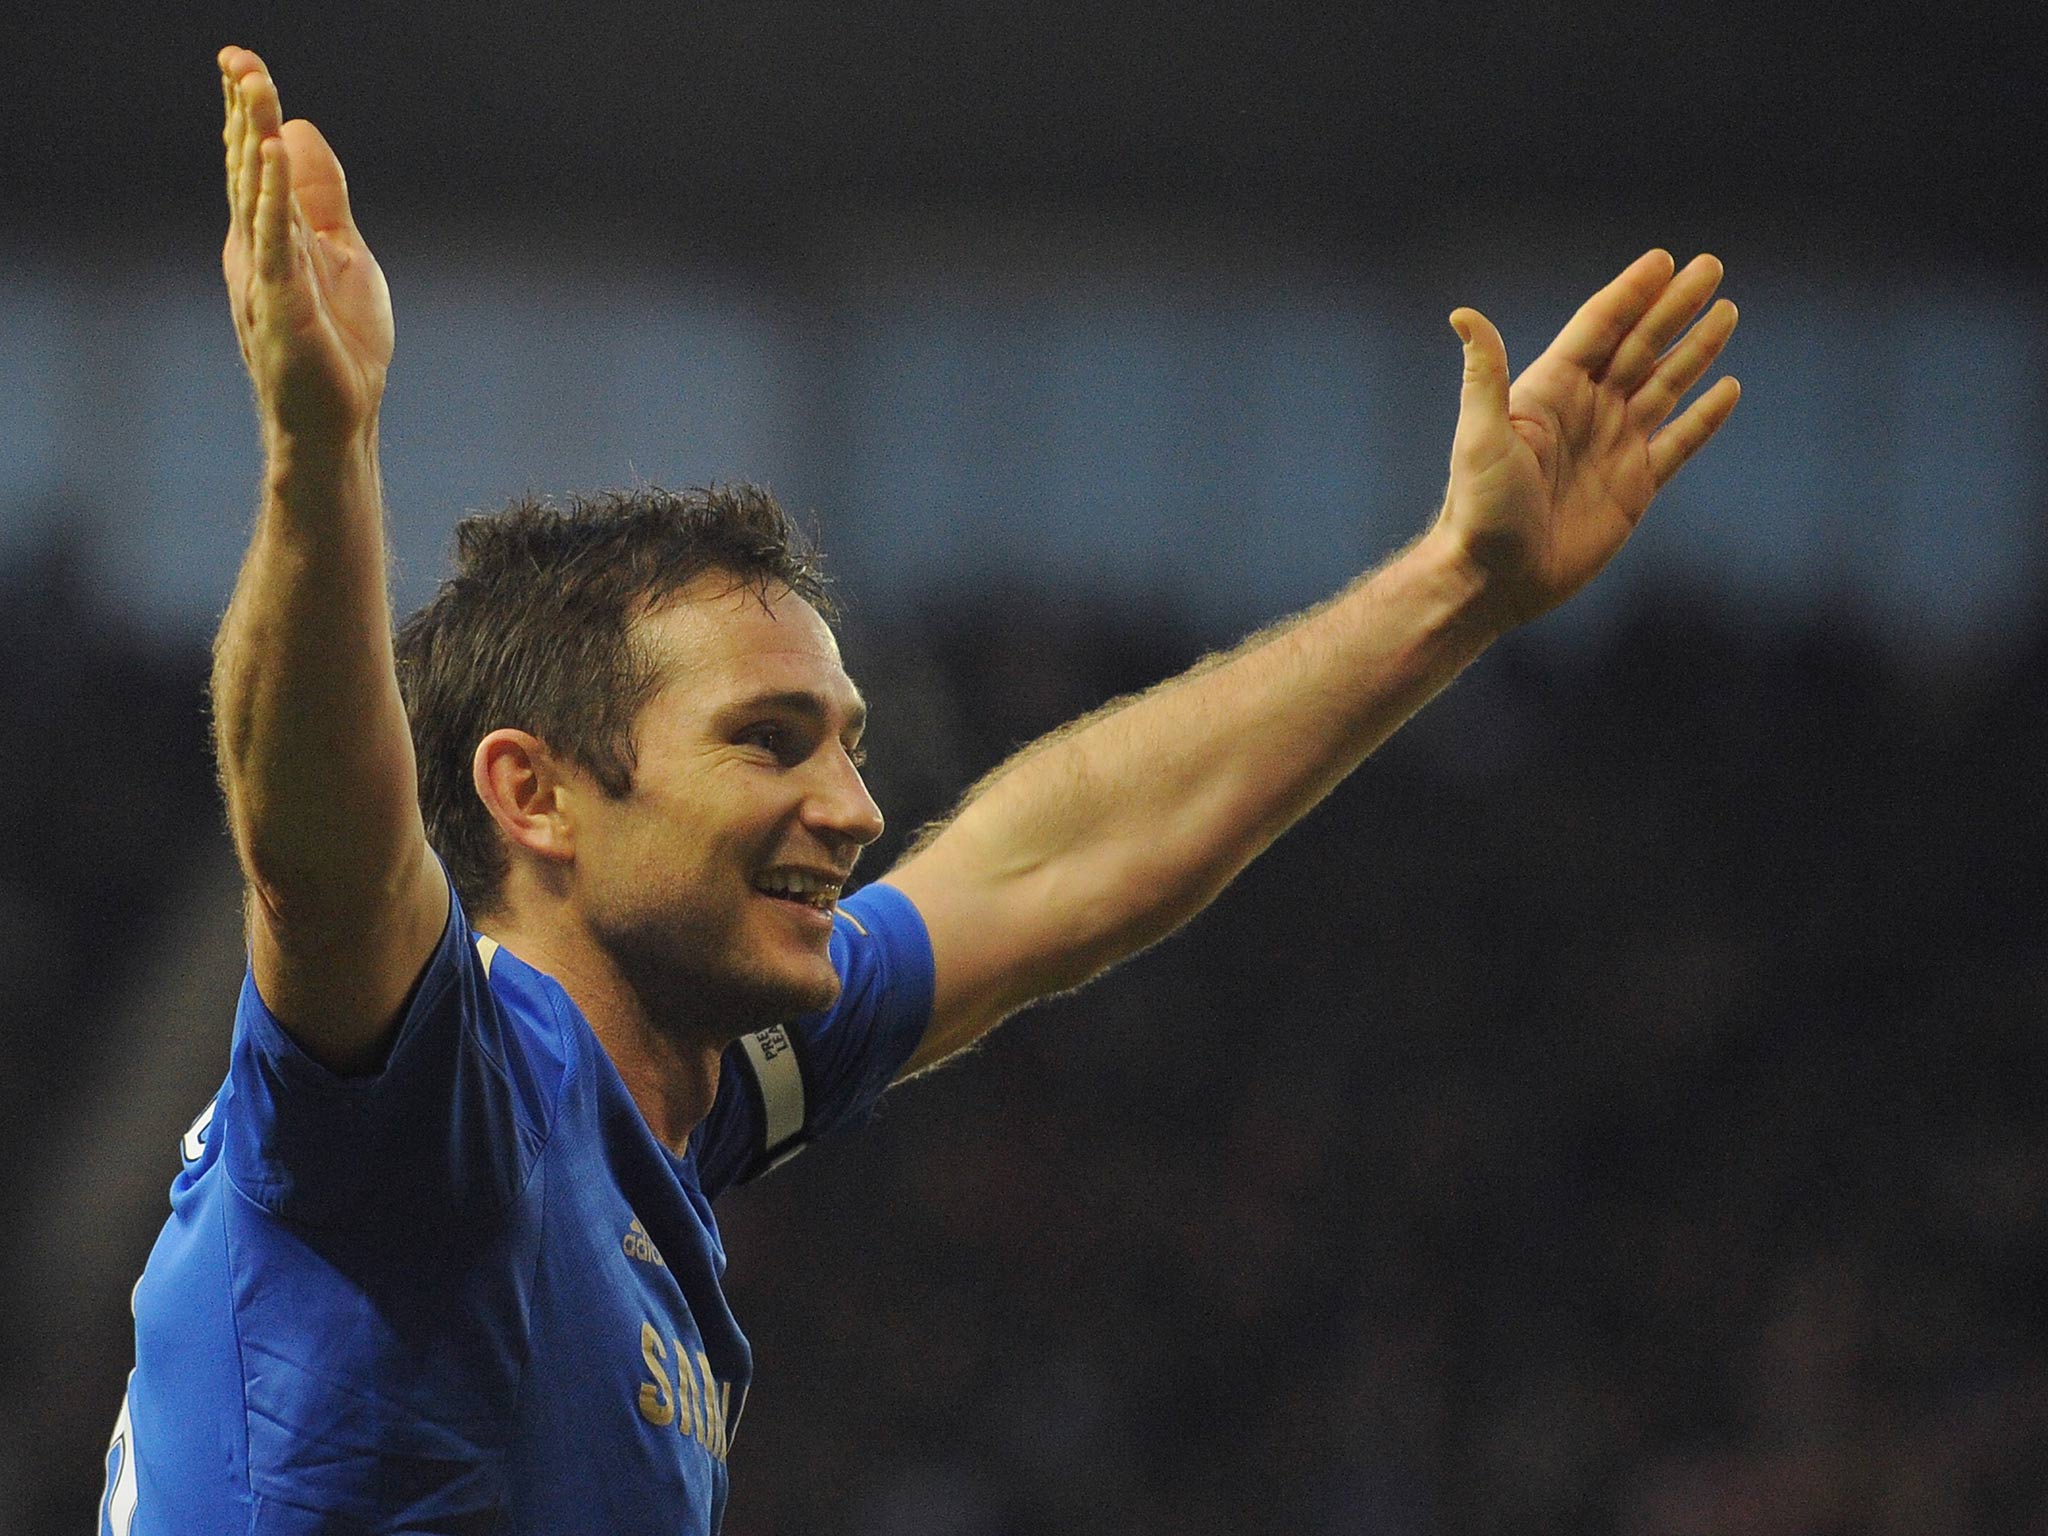 Chelsea midfielder Frank Lampard